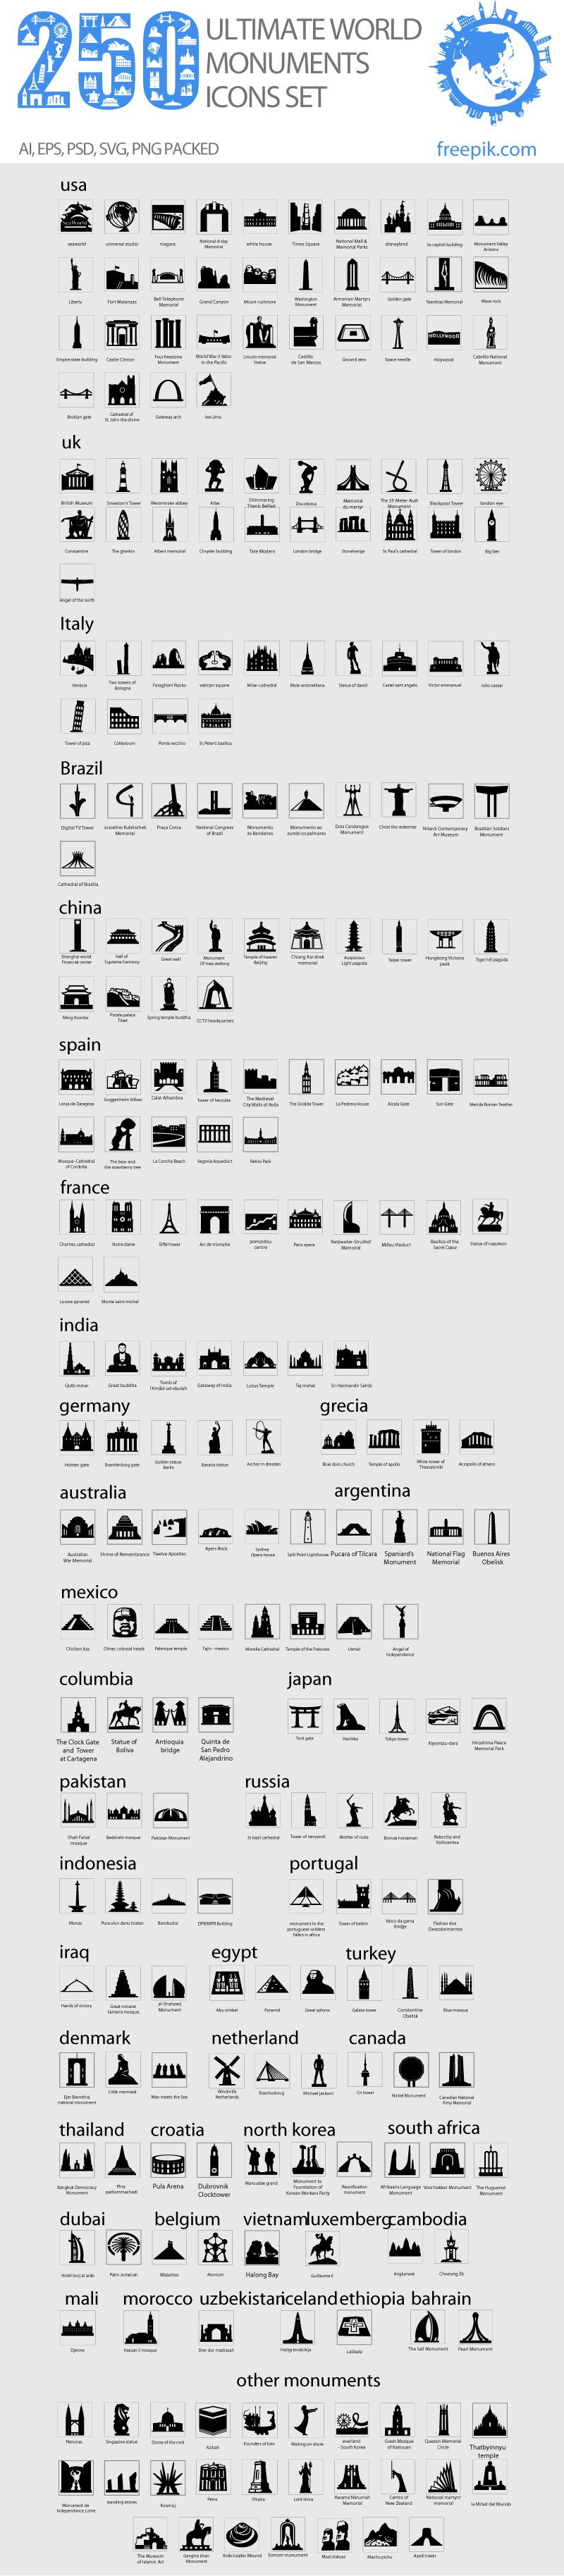 250个世界文明古迹建筑图标素材